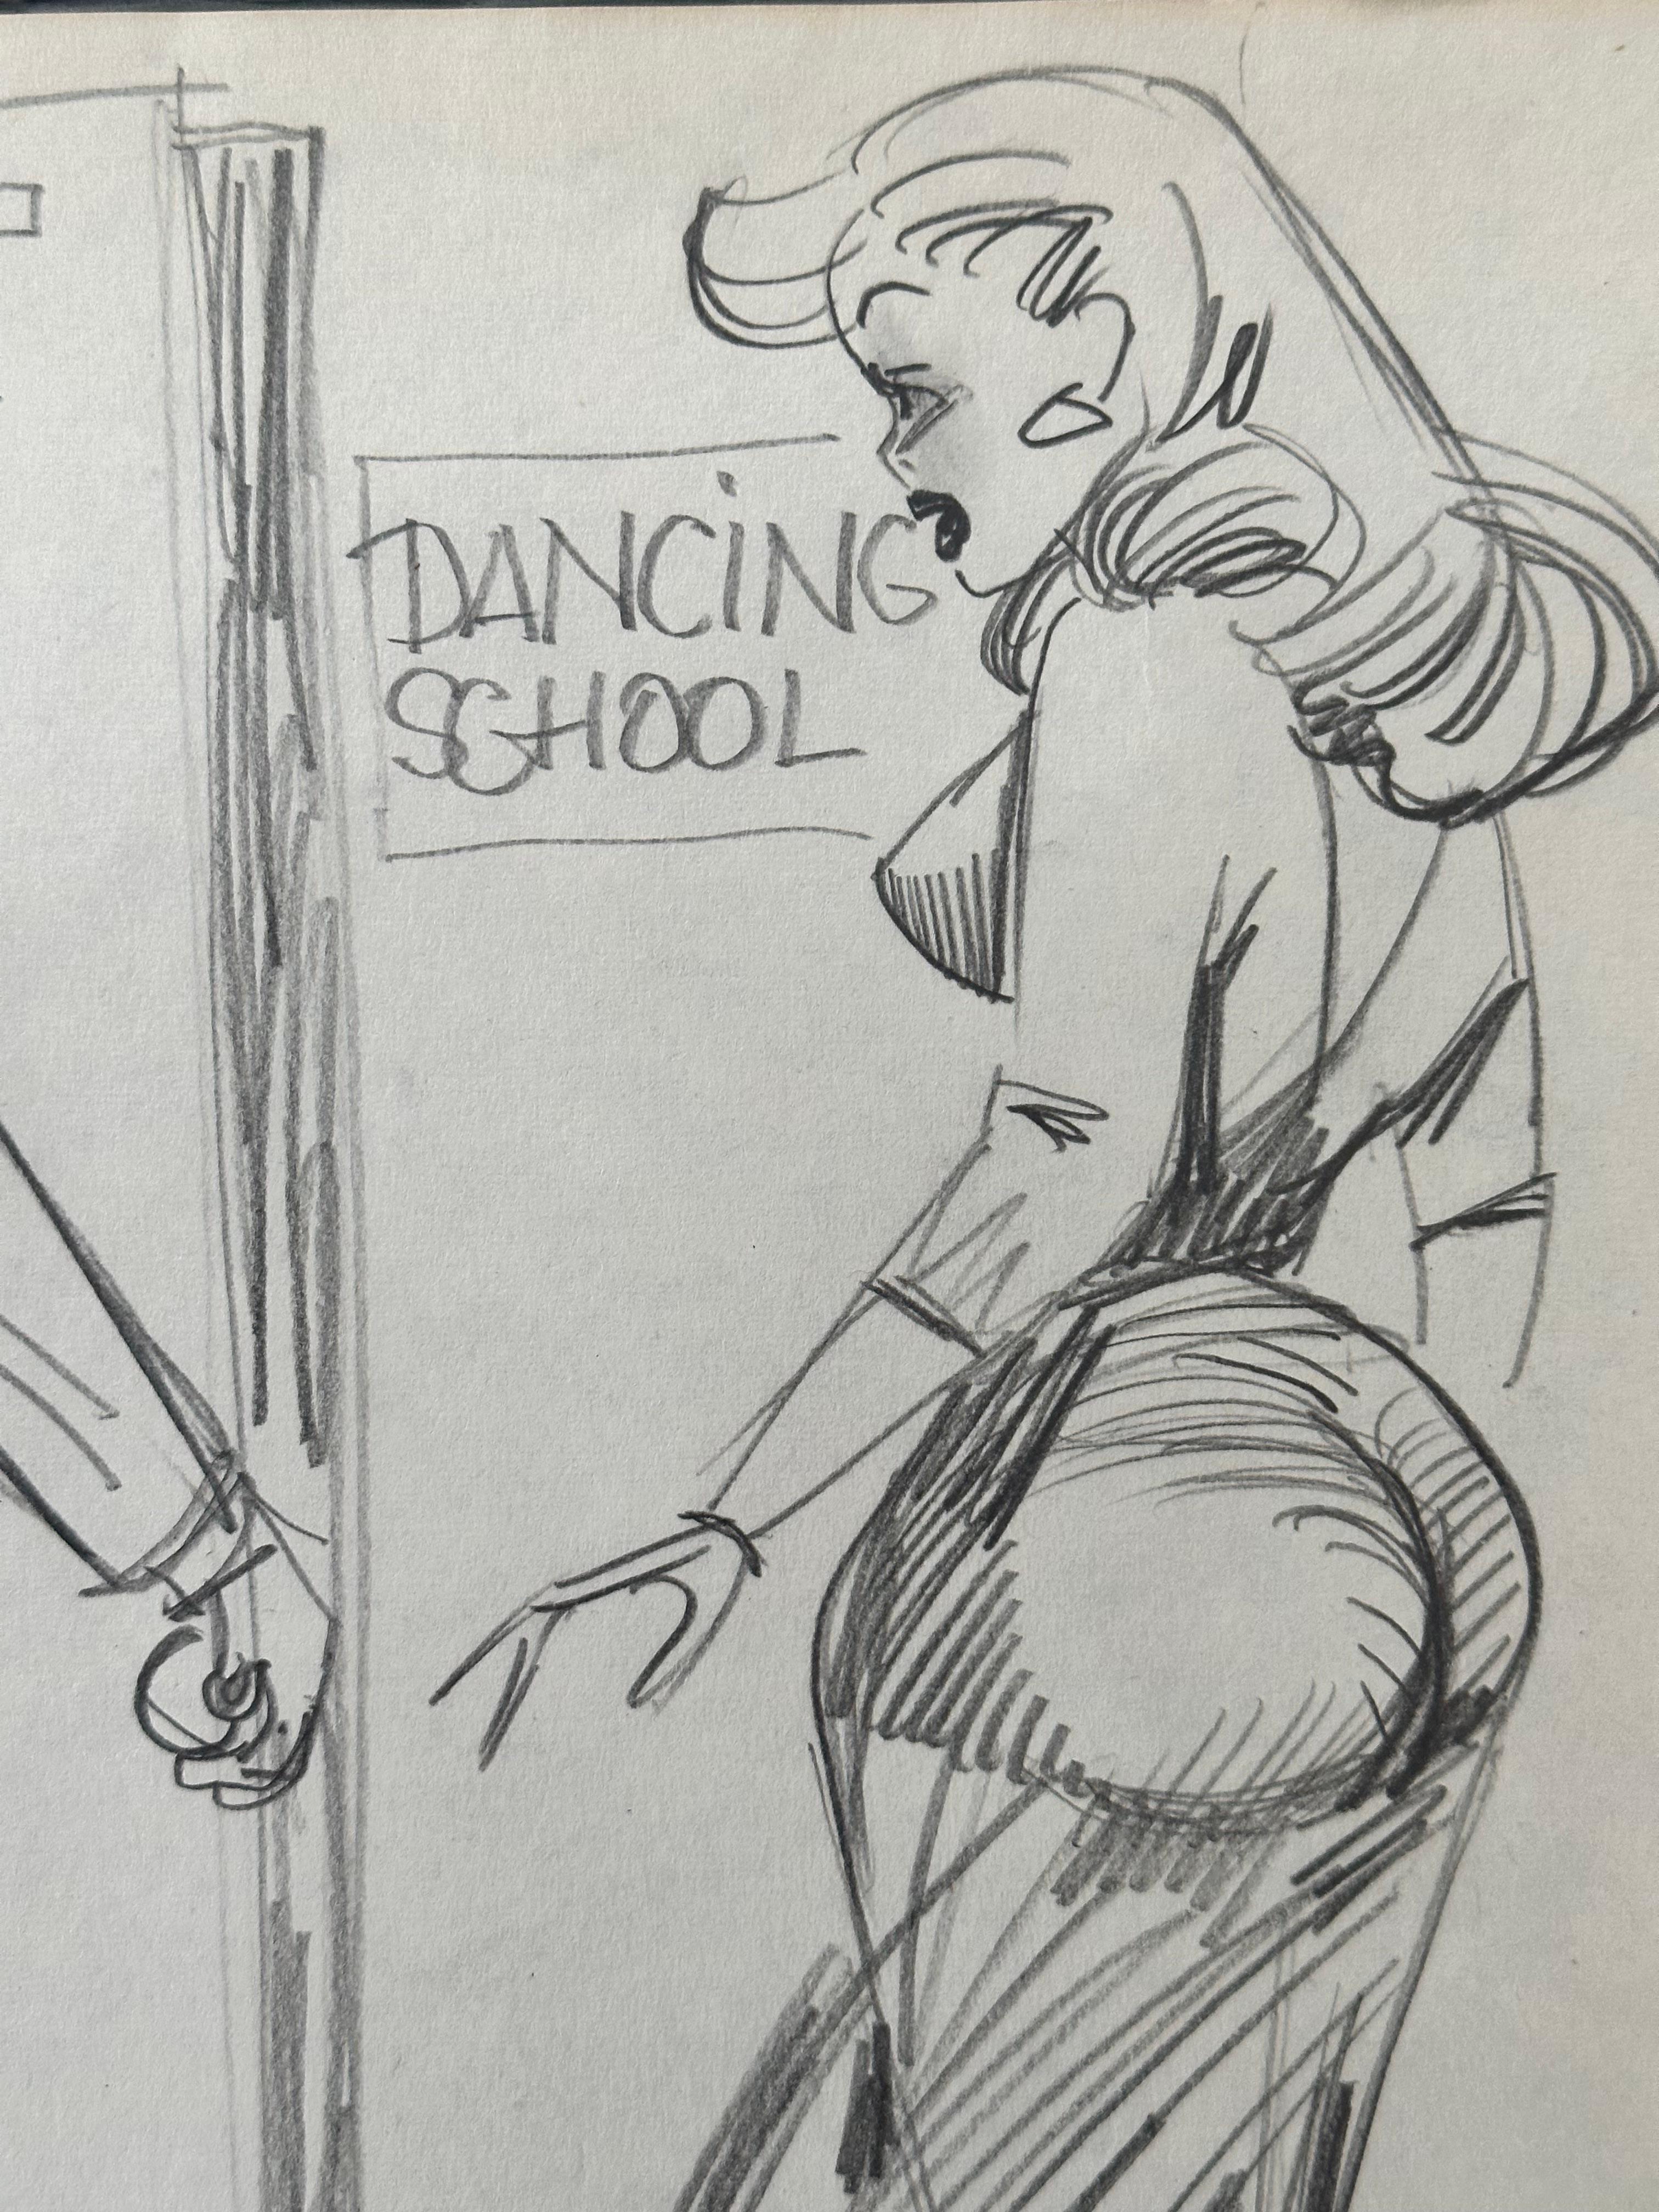 Humorous Gentleman's Magazine cartoon Dancing School - Art by Unknown